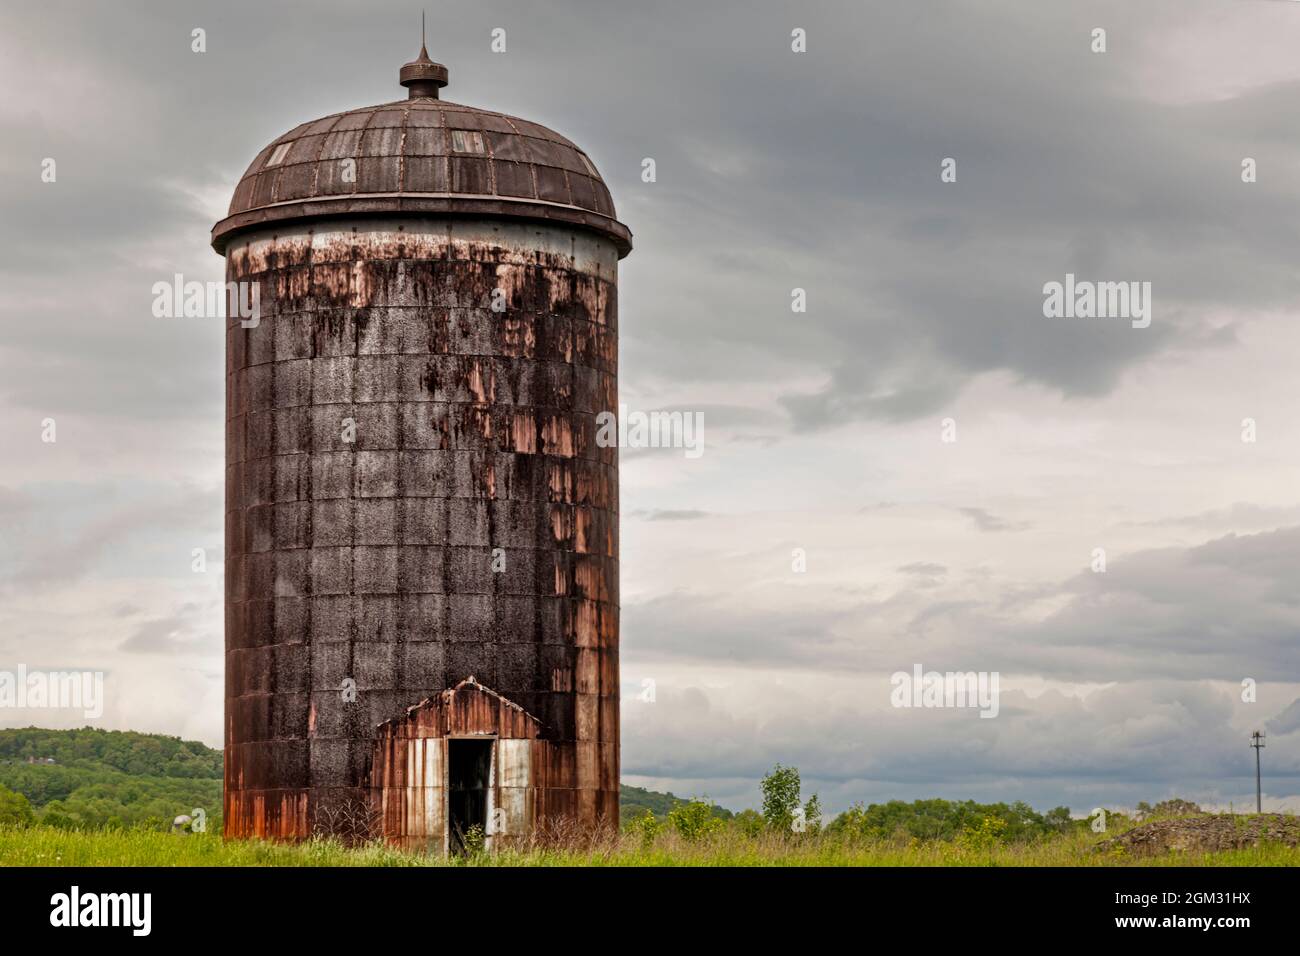 Silo rustico - Vista di un silo arrugginito in una fattoria della contea di Sussex, New Jersey, questa immagine è disponibile a colori e in bianco e nero. Per visualizzare aggiungi Foto Stock